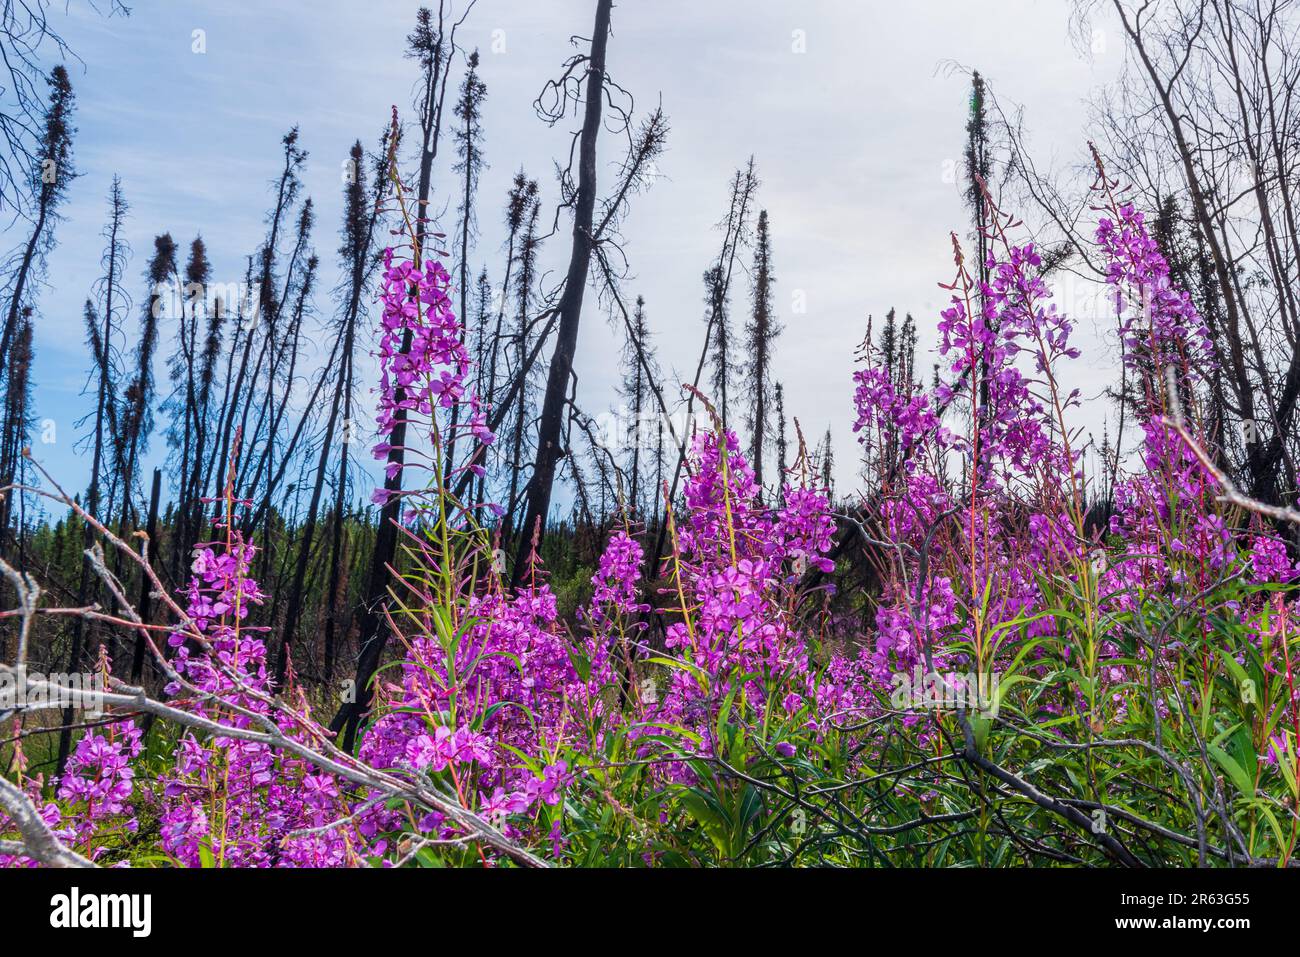 Atemberaubende rosafarbene, lila Feuerweed-Blumen in voller Blüte während der Sommerzeit im Norden Kanadas, Yukon Territory mit hellblauem Himmel und brennenden Bäumen Stockfoto